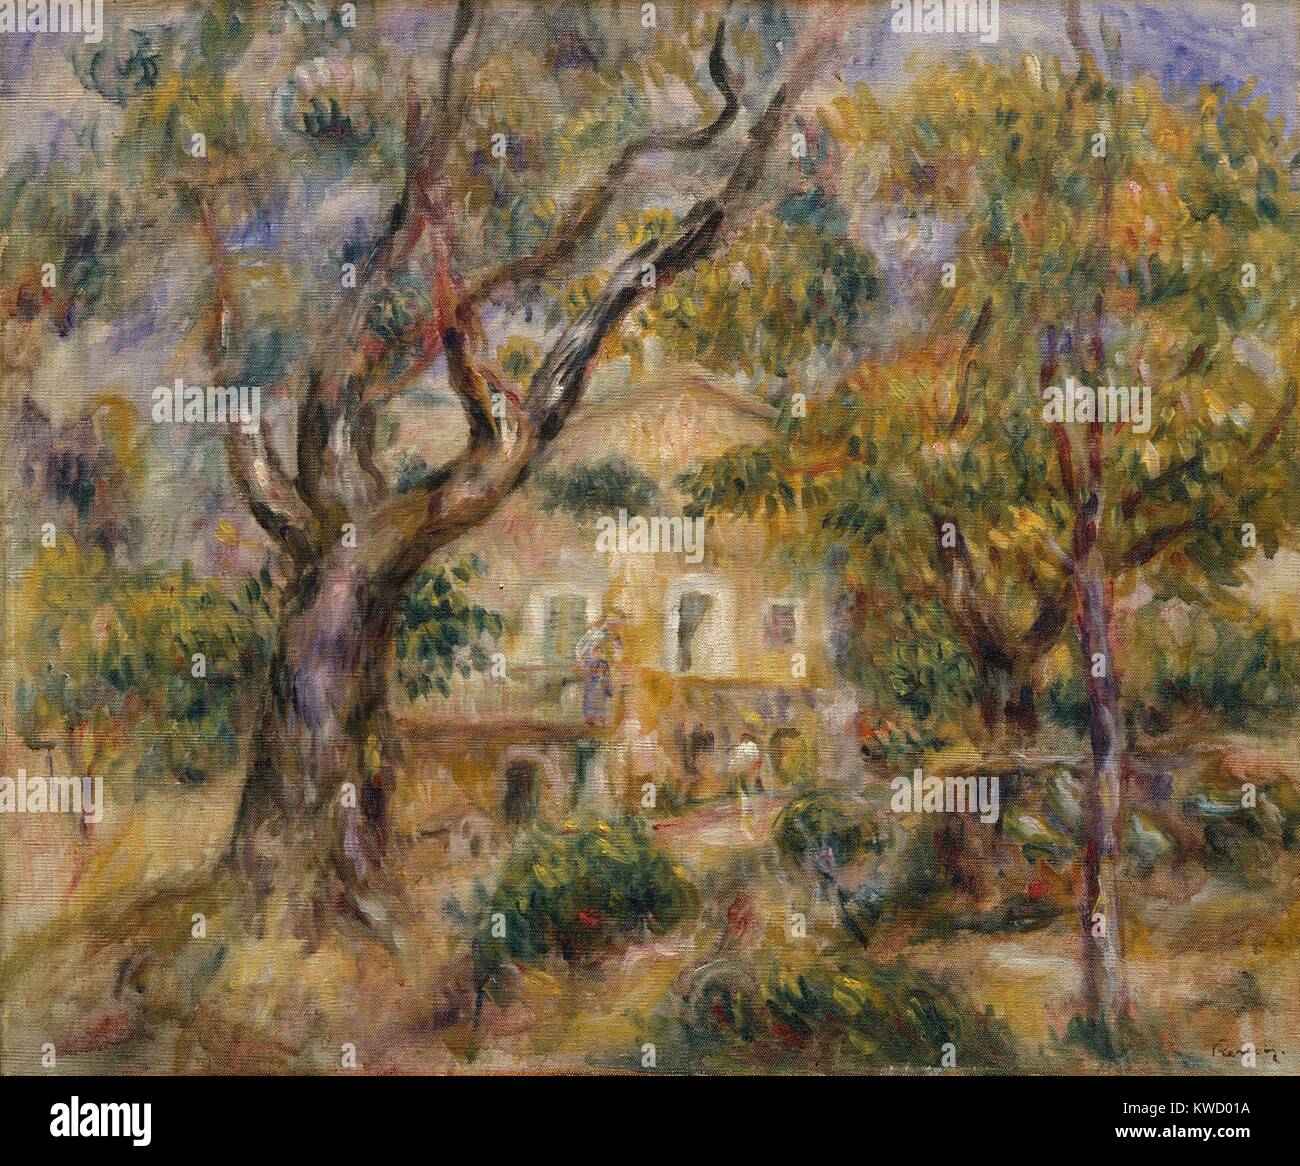 Die Farm im Les Collettes, Cagnes, von Auguste Renoir, 1908-14, französischer Impressionisten Öl Malerei. Renoir verschoben auf das Mittelmeer in der Nähe von Nizza 1907 und malte seine Bauernhaus umrahmt von Olivenbäumen (BSLOC 2017 3 93) Stockfoto